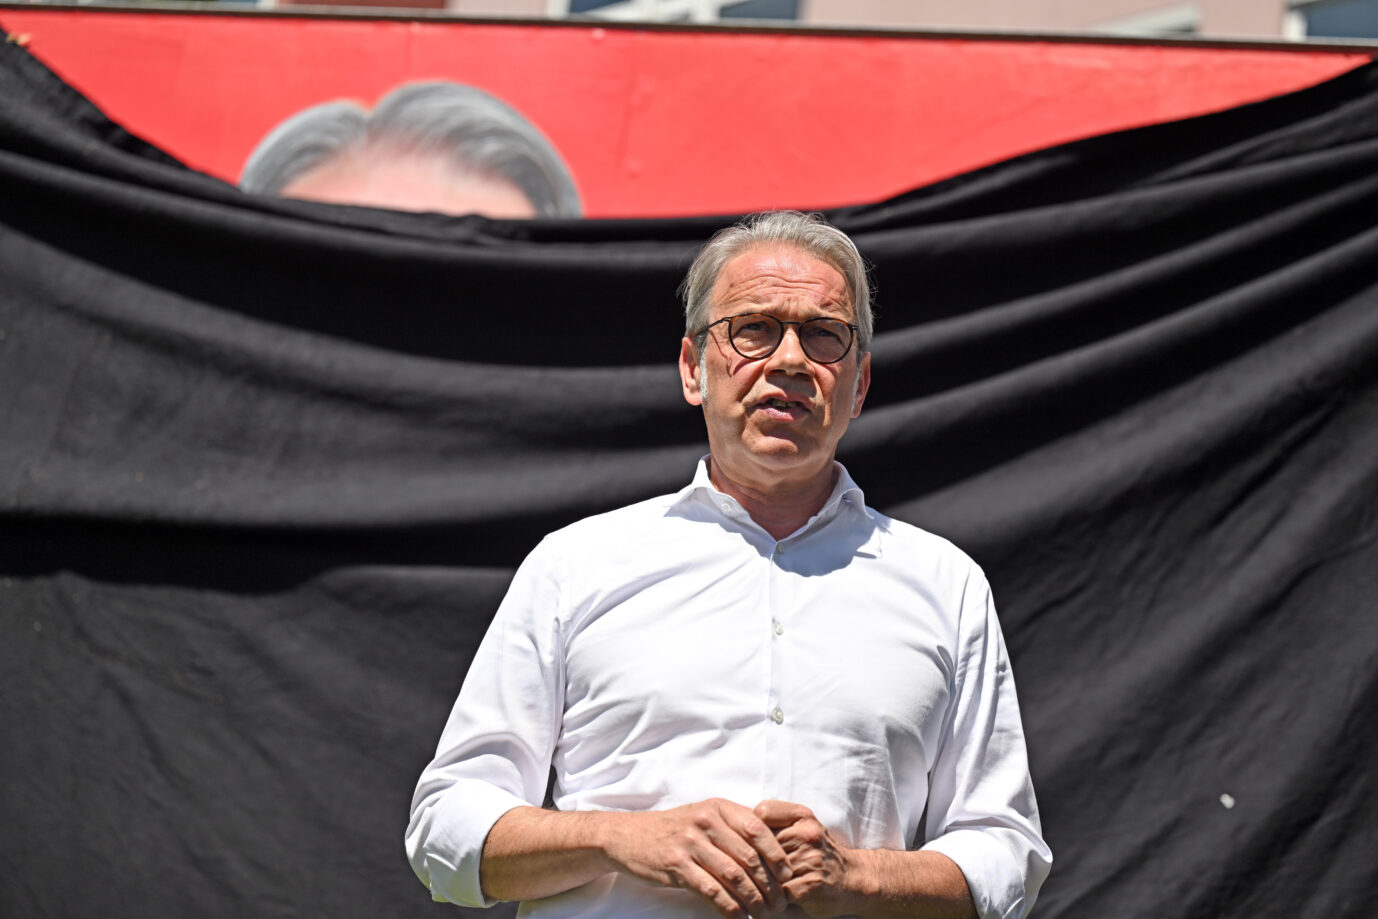 Der thüringische Innenminister Georg Maier (SPD) spricht vor einer schwarzen Flagge, die ein SPD-Wahlplakat verhüllt. Wenn es nach ihm geht, soll der schwerkriminelle marokkanische Asylbewerber bald nun endlich abgeschoben werden